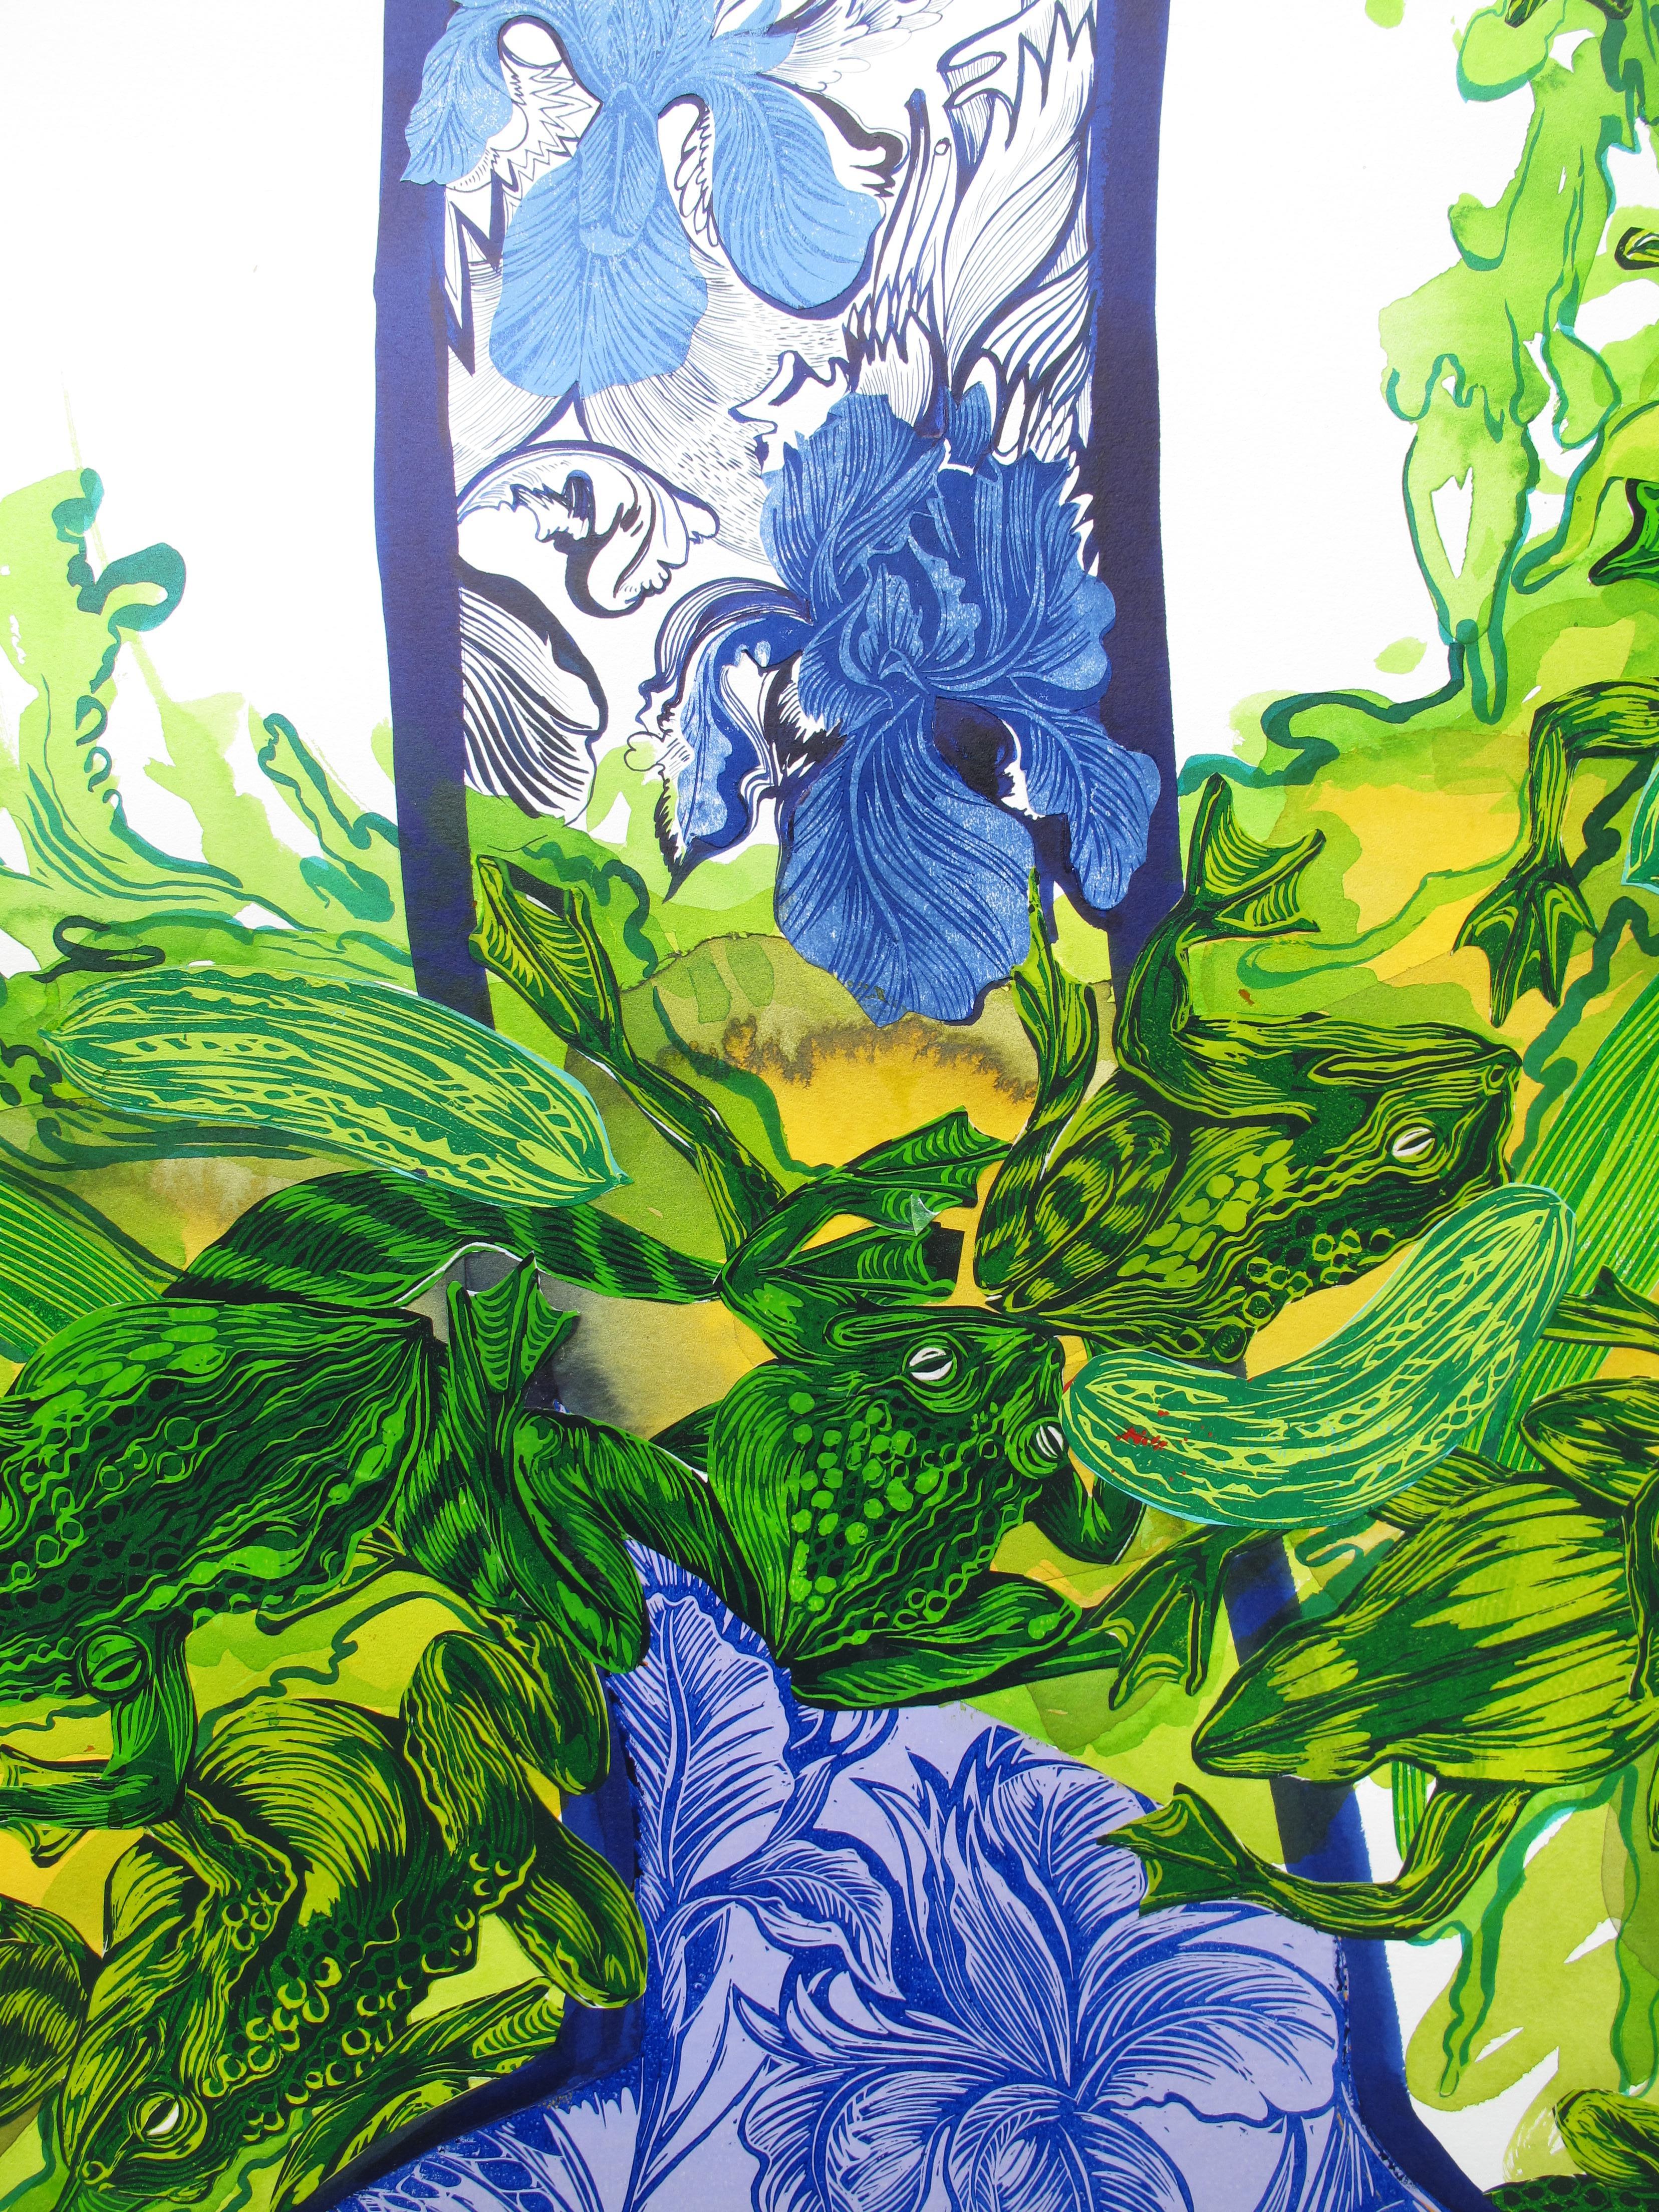  Grande peinture surréaliste Royal College of Art LGBTQ+ femmes artiste vert bleu - Noir Figurative Painting par Isabel Rock